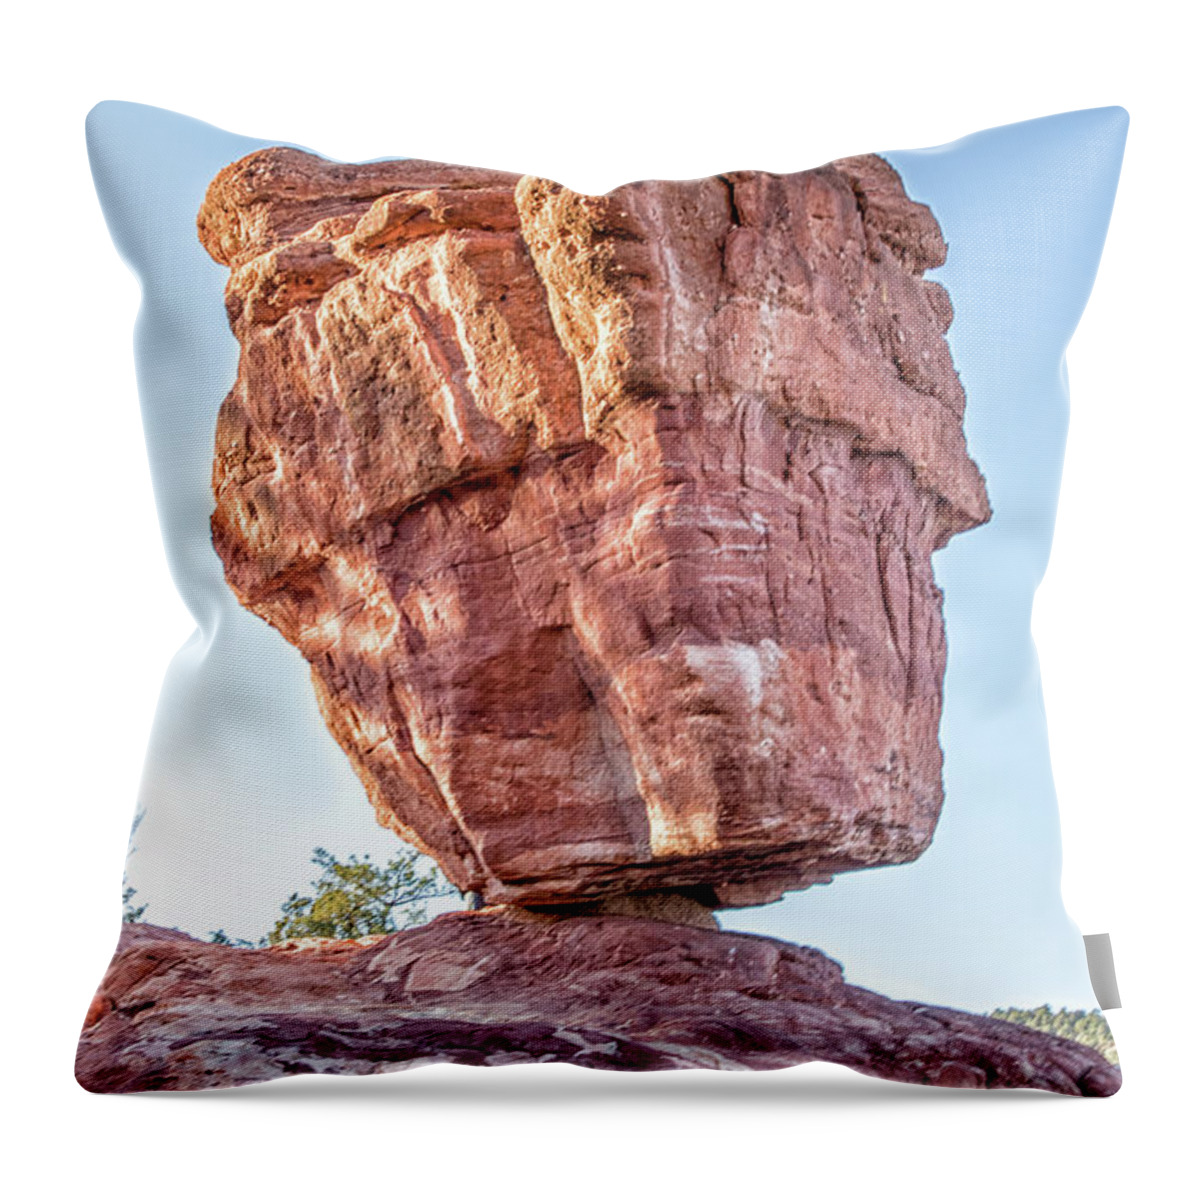 Balanced Rock Throw Pillow featuring the photograph Balanced Rock in Garden of the Gods, Colorado Springs by Peter Ciro